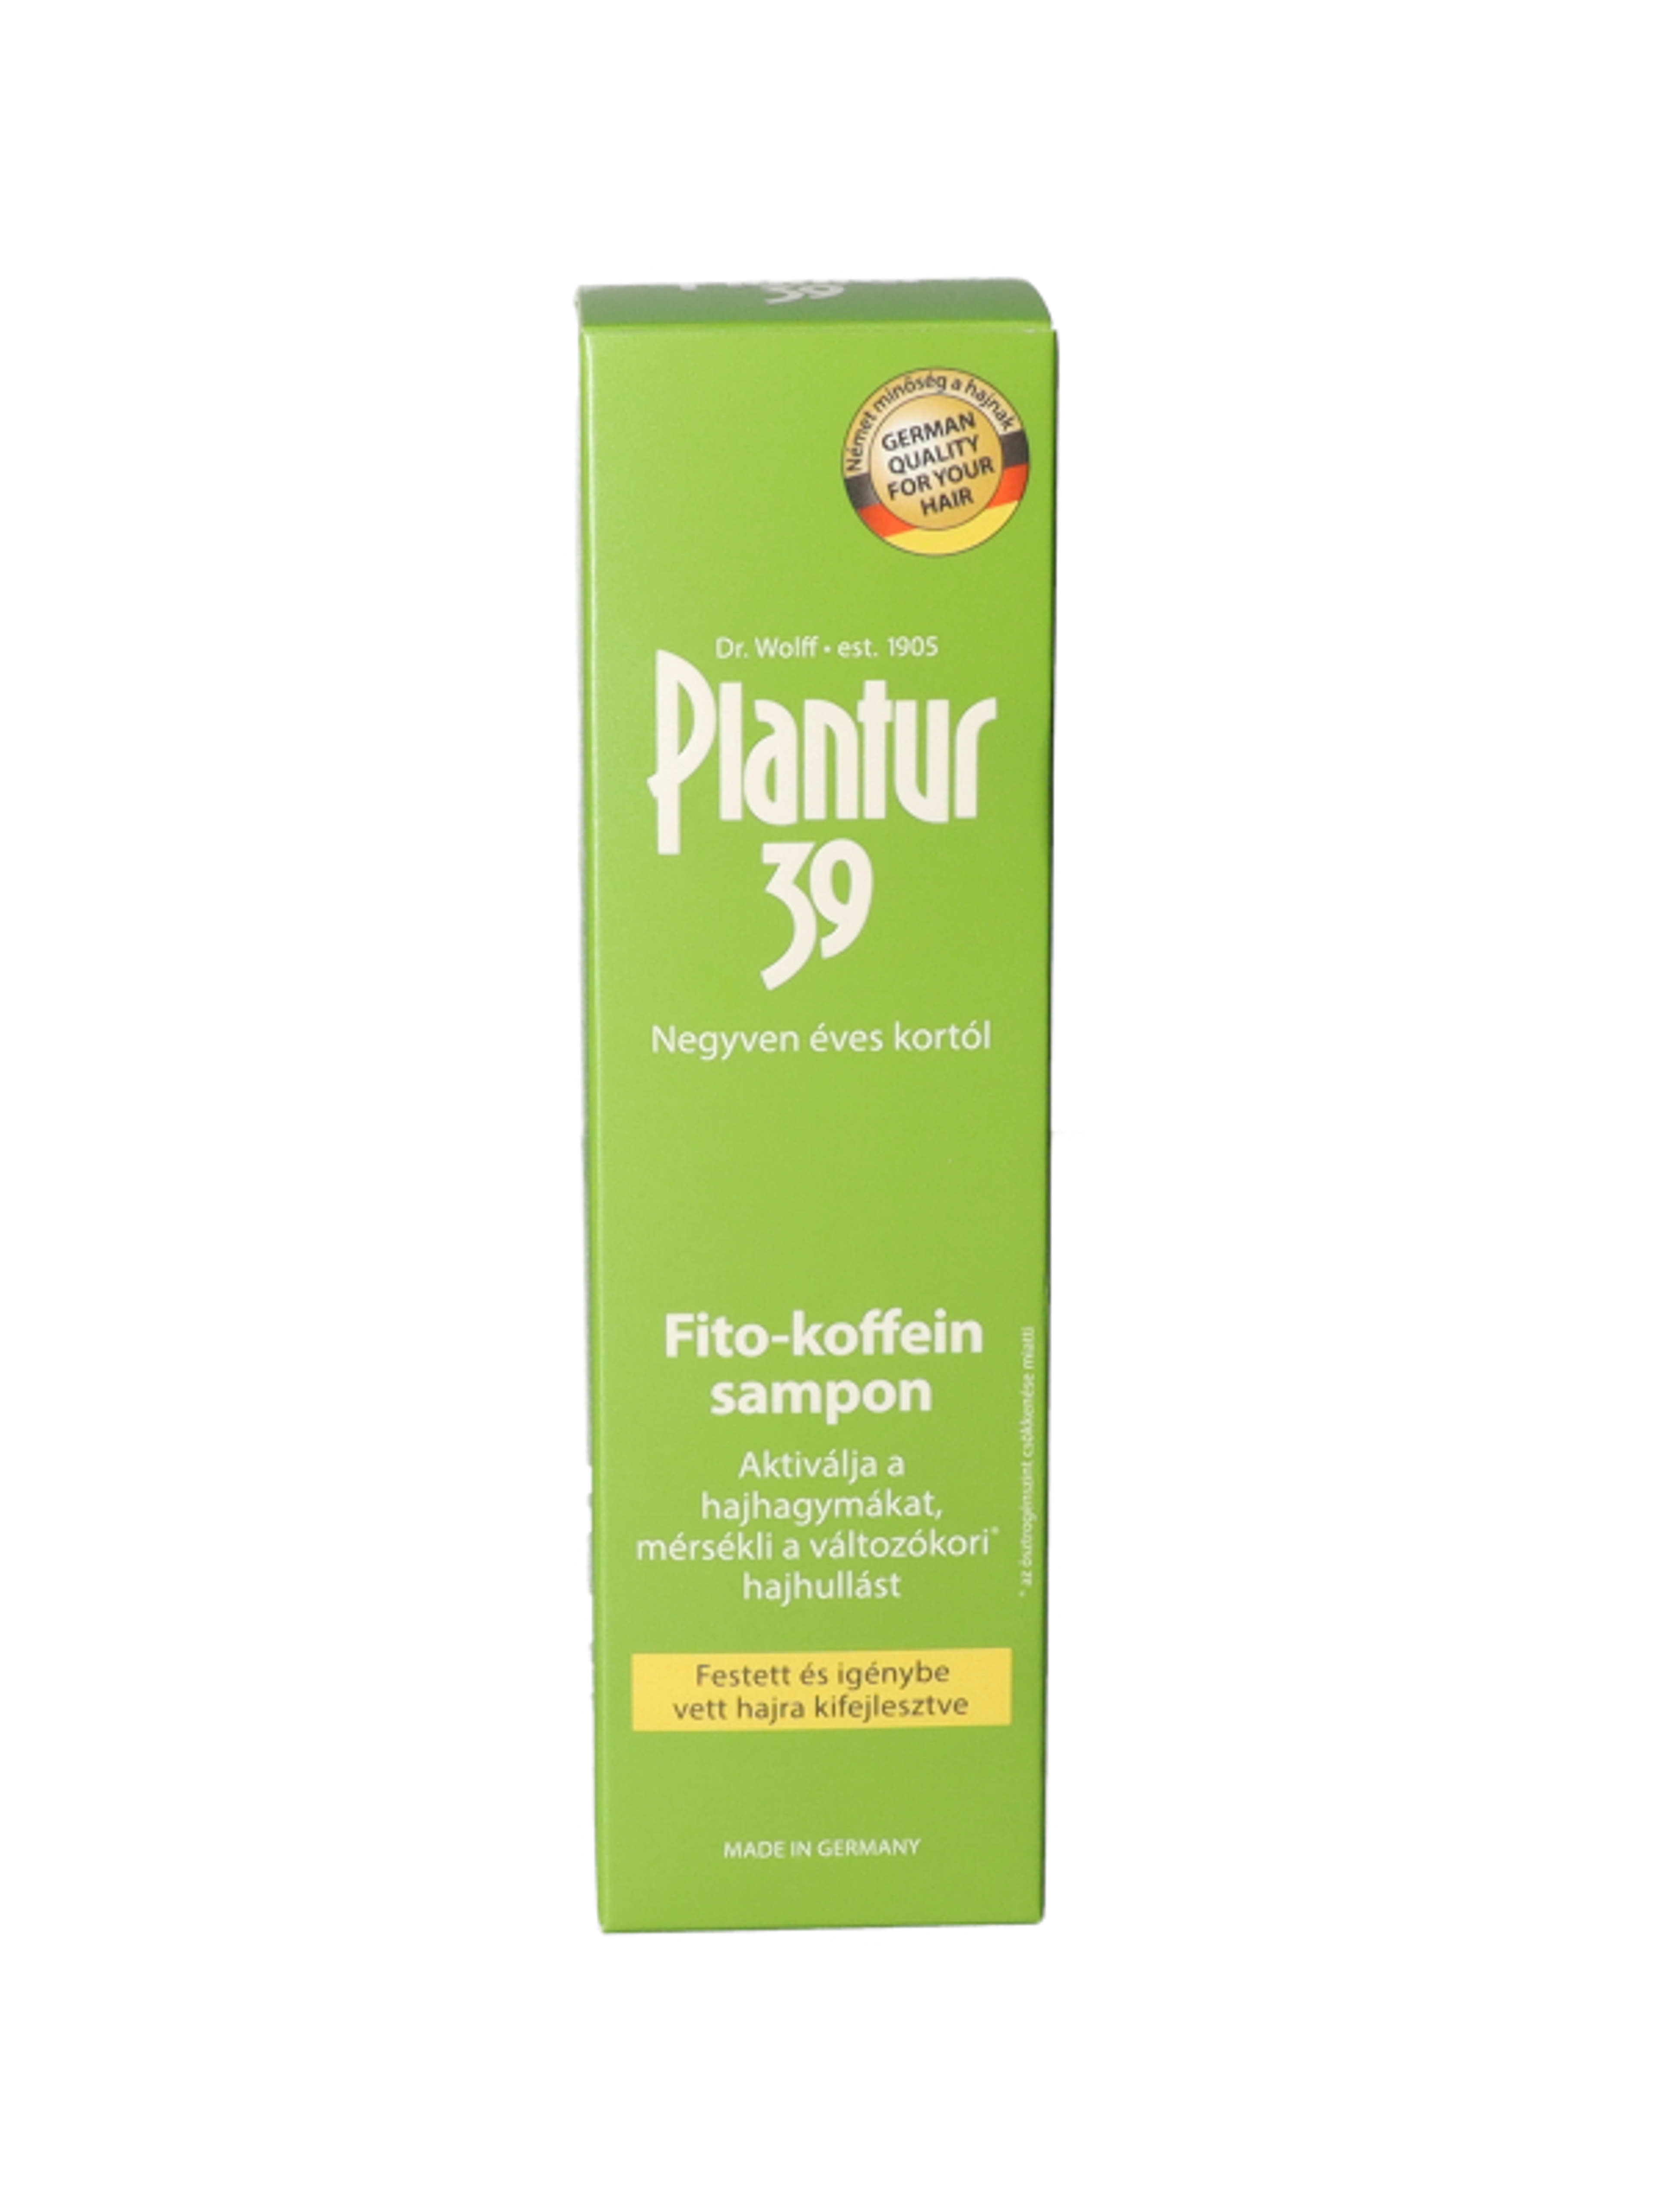 Plantur 39 Fito-Koffein Festett Hajra sampon - 250 ml-1